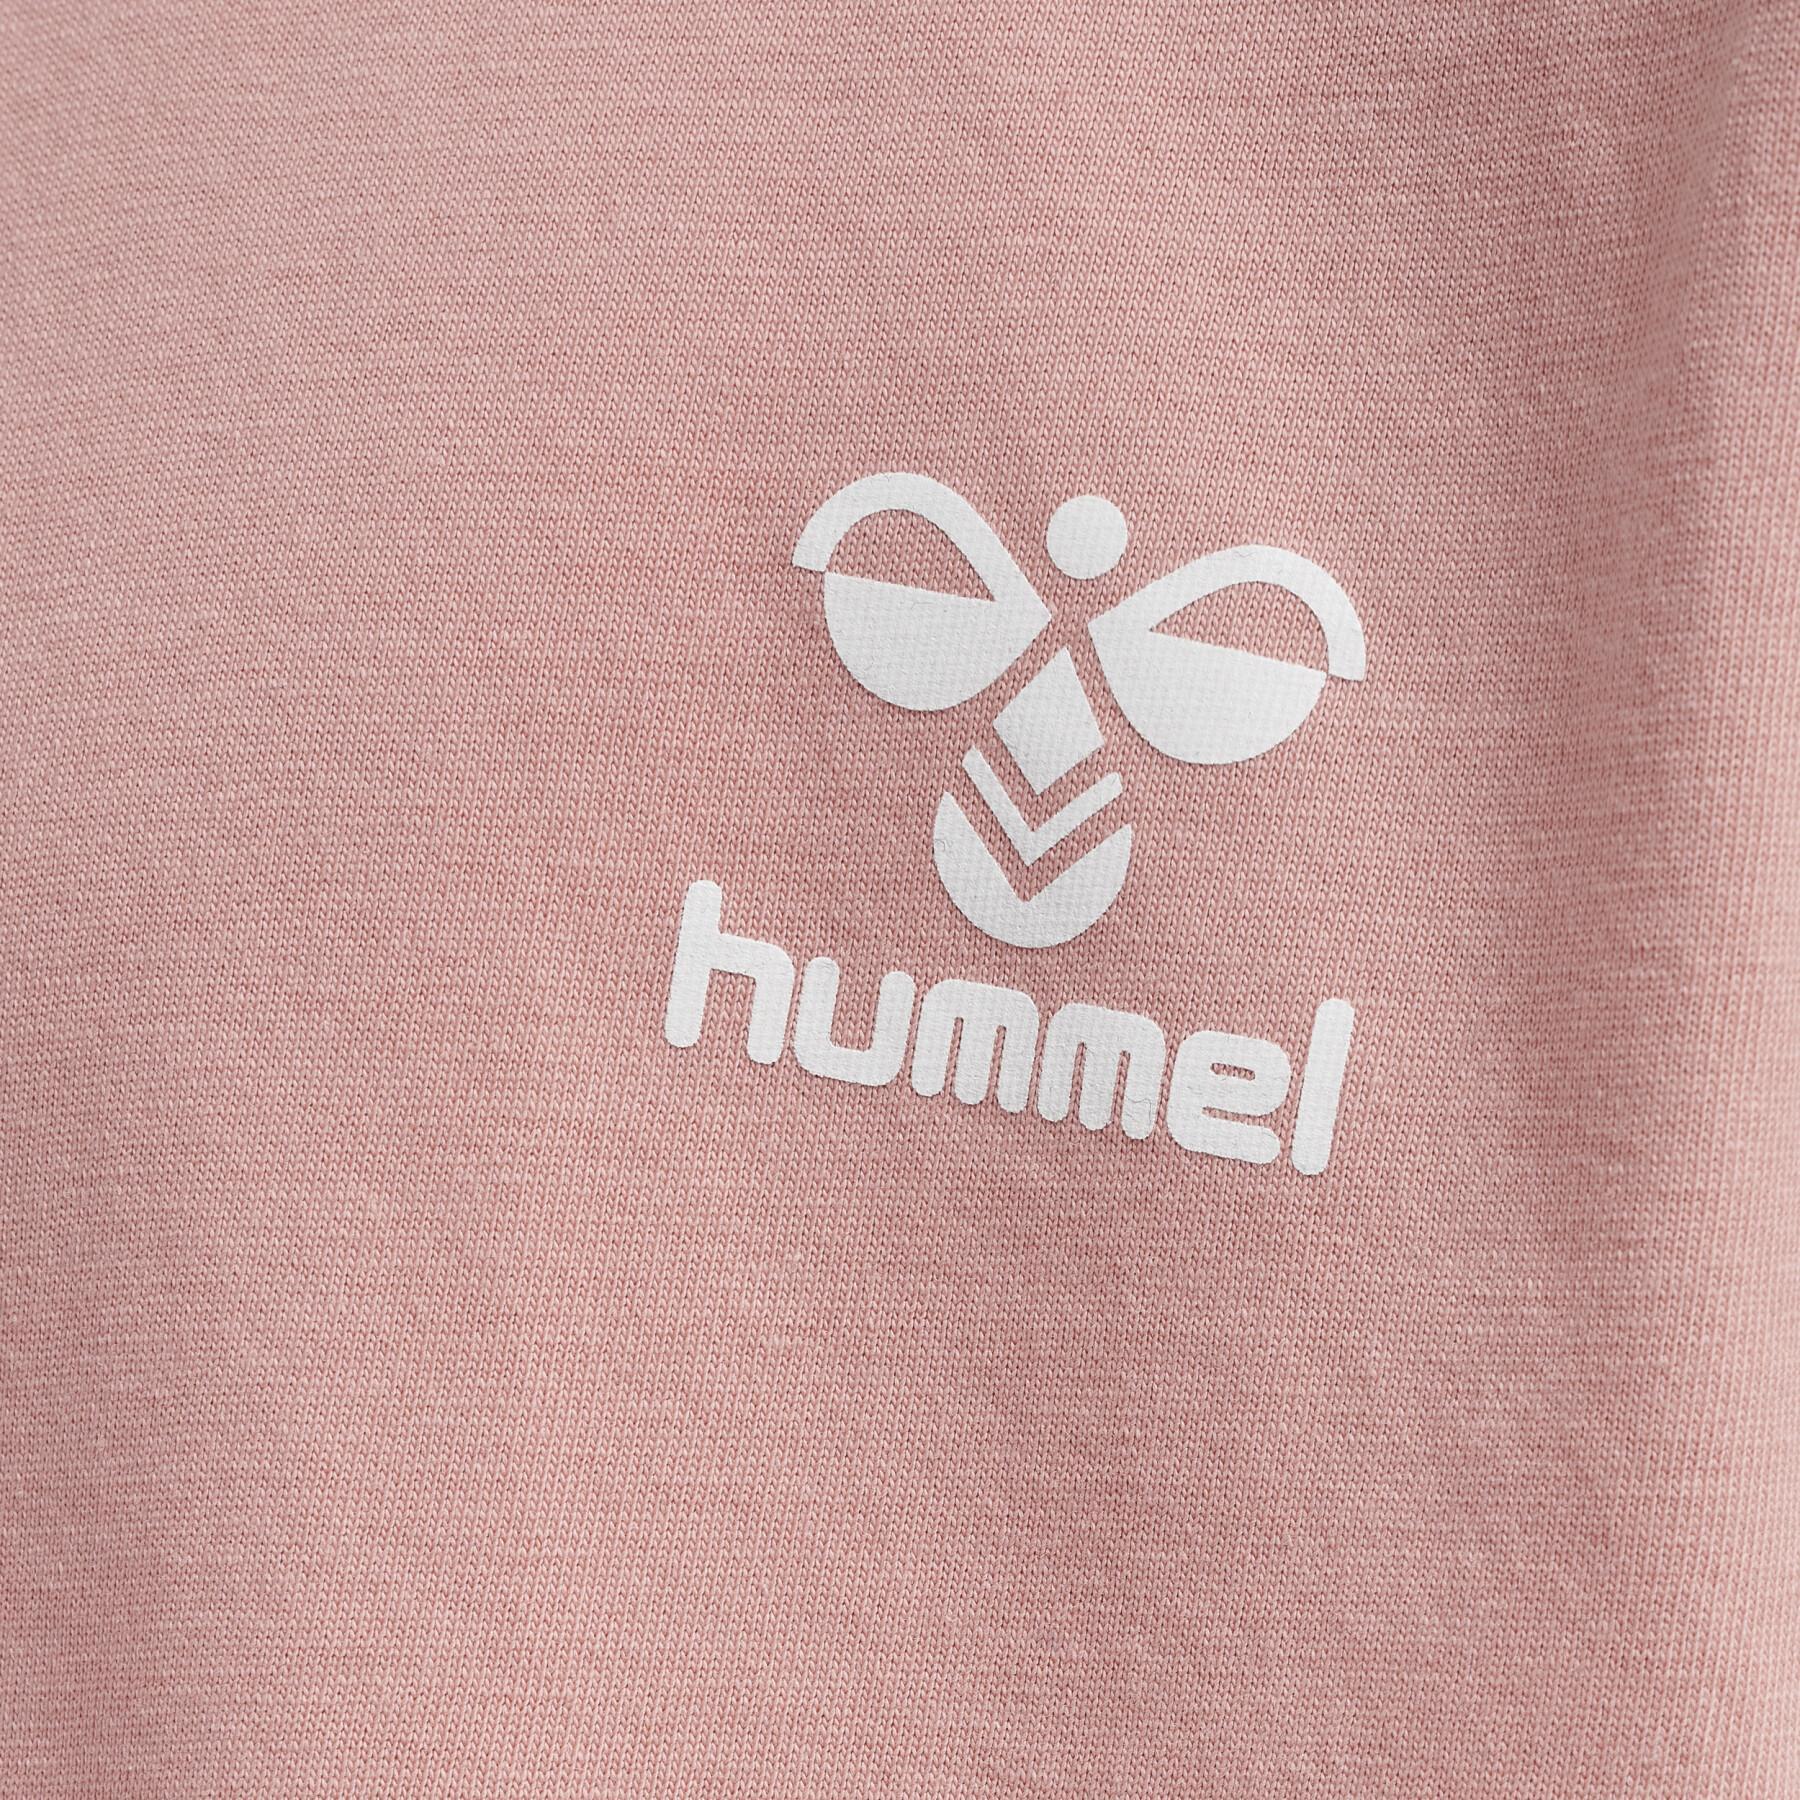 Dziewczęca sukienka t-shirtowa Hummel Mille